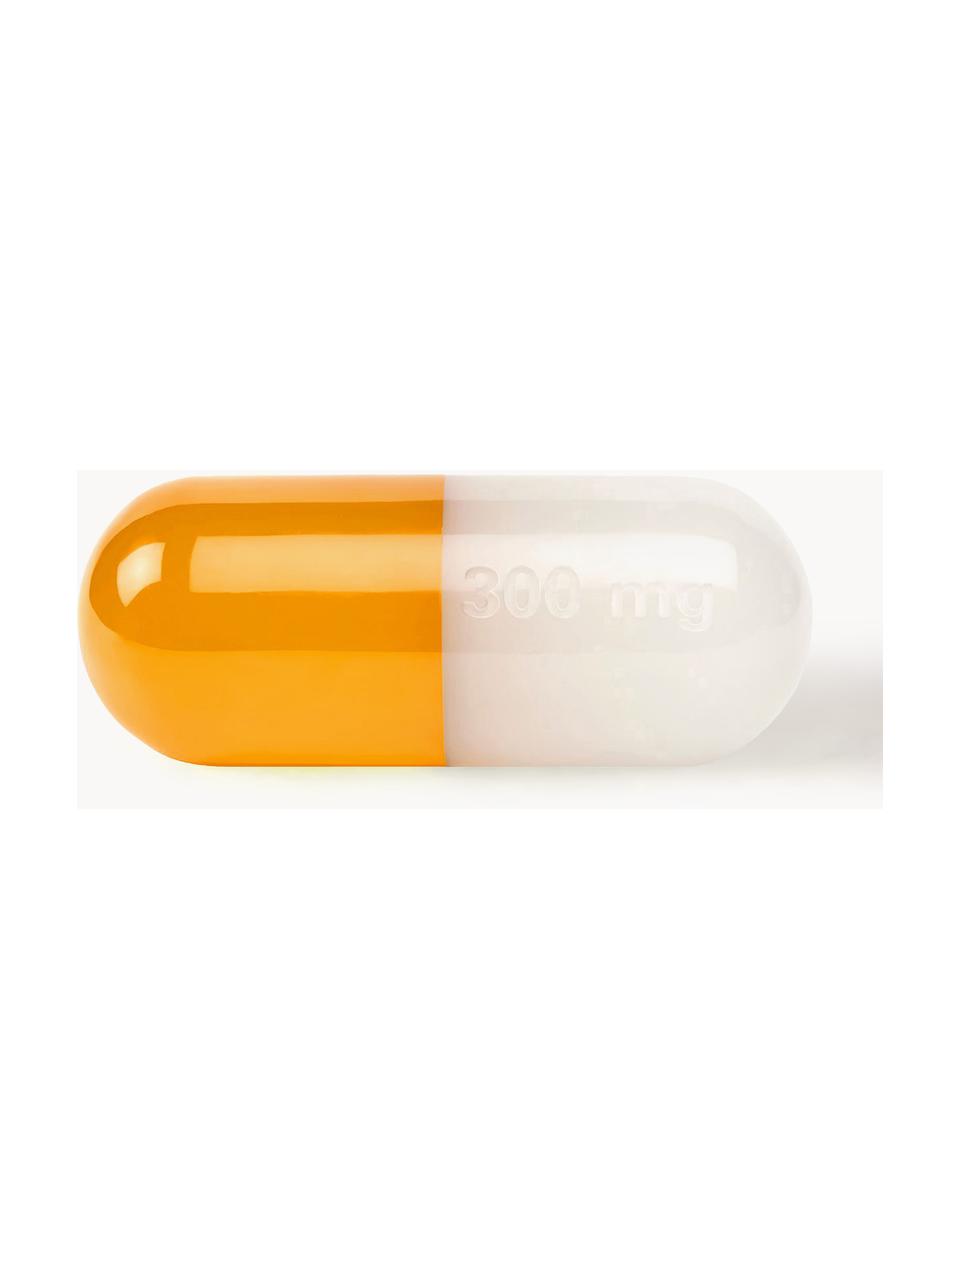 Deko-Objekt Pill, Polyacryl, poliert, Weiss, Orange, B 24 x H 9 cm